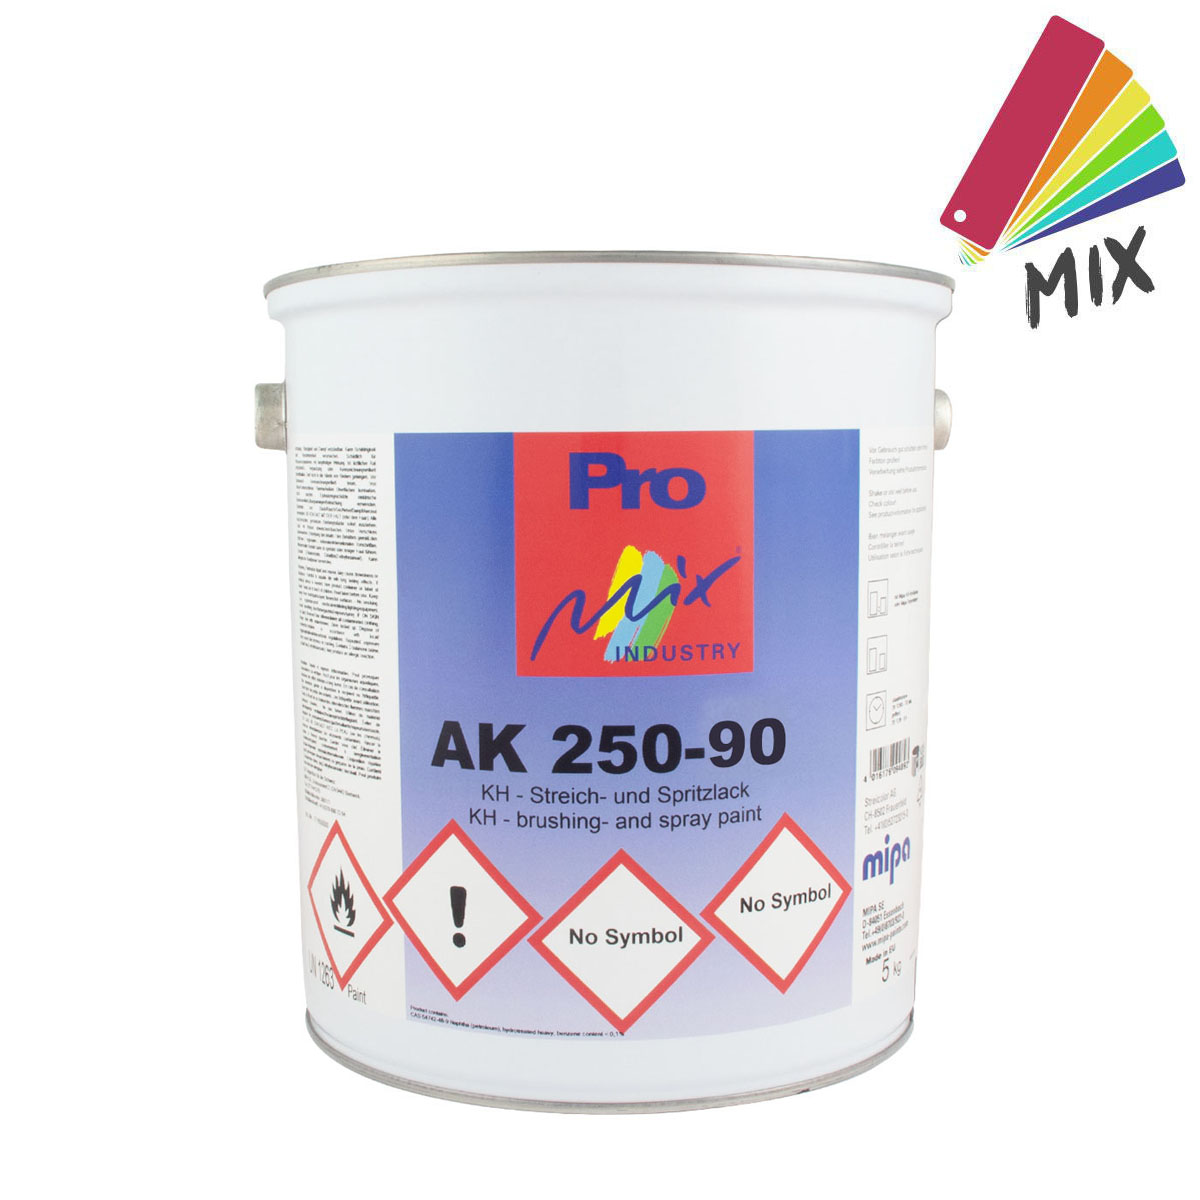 Pro-mipamix_AK-250-90-streichundstpritzlack_5kg_gross